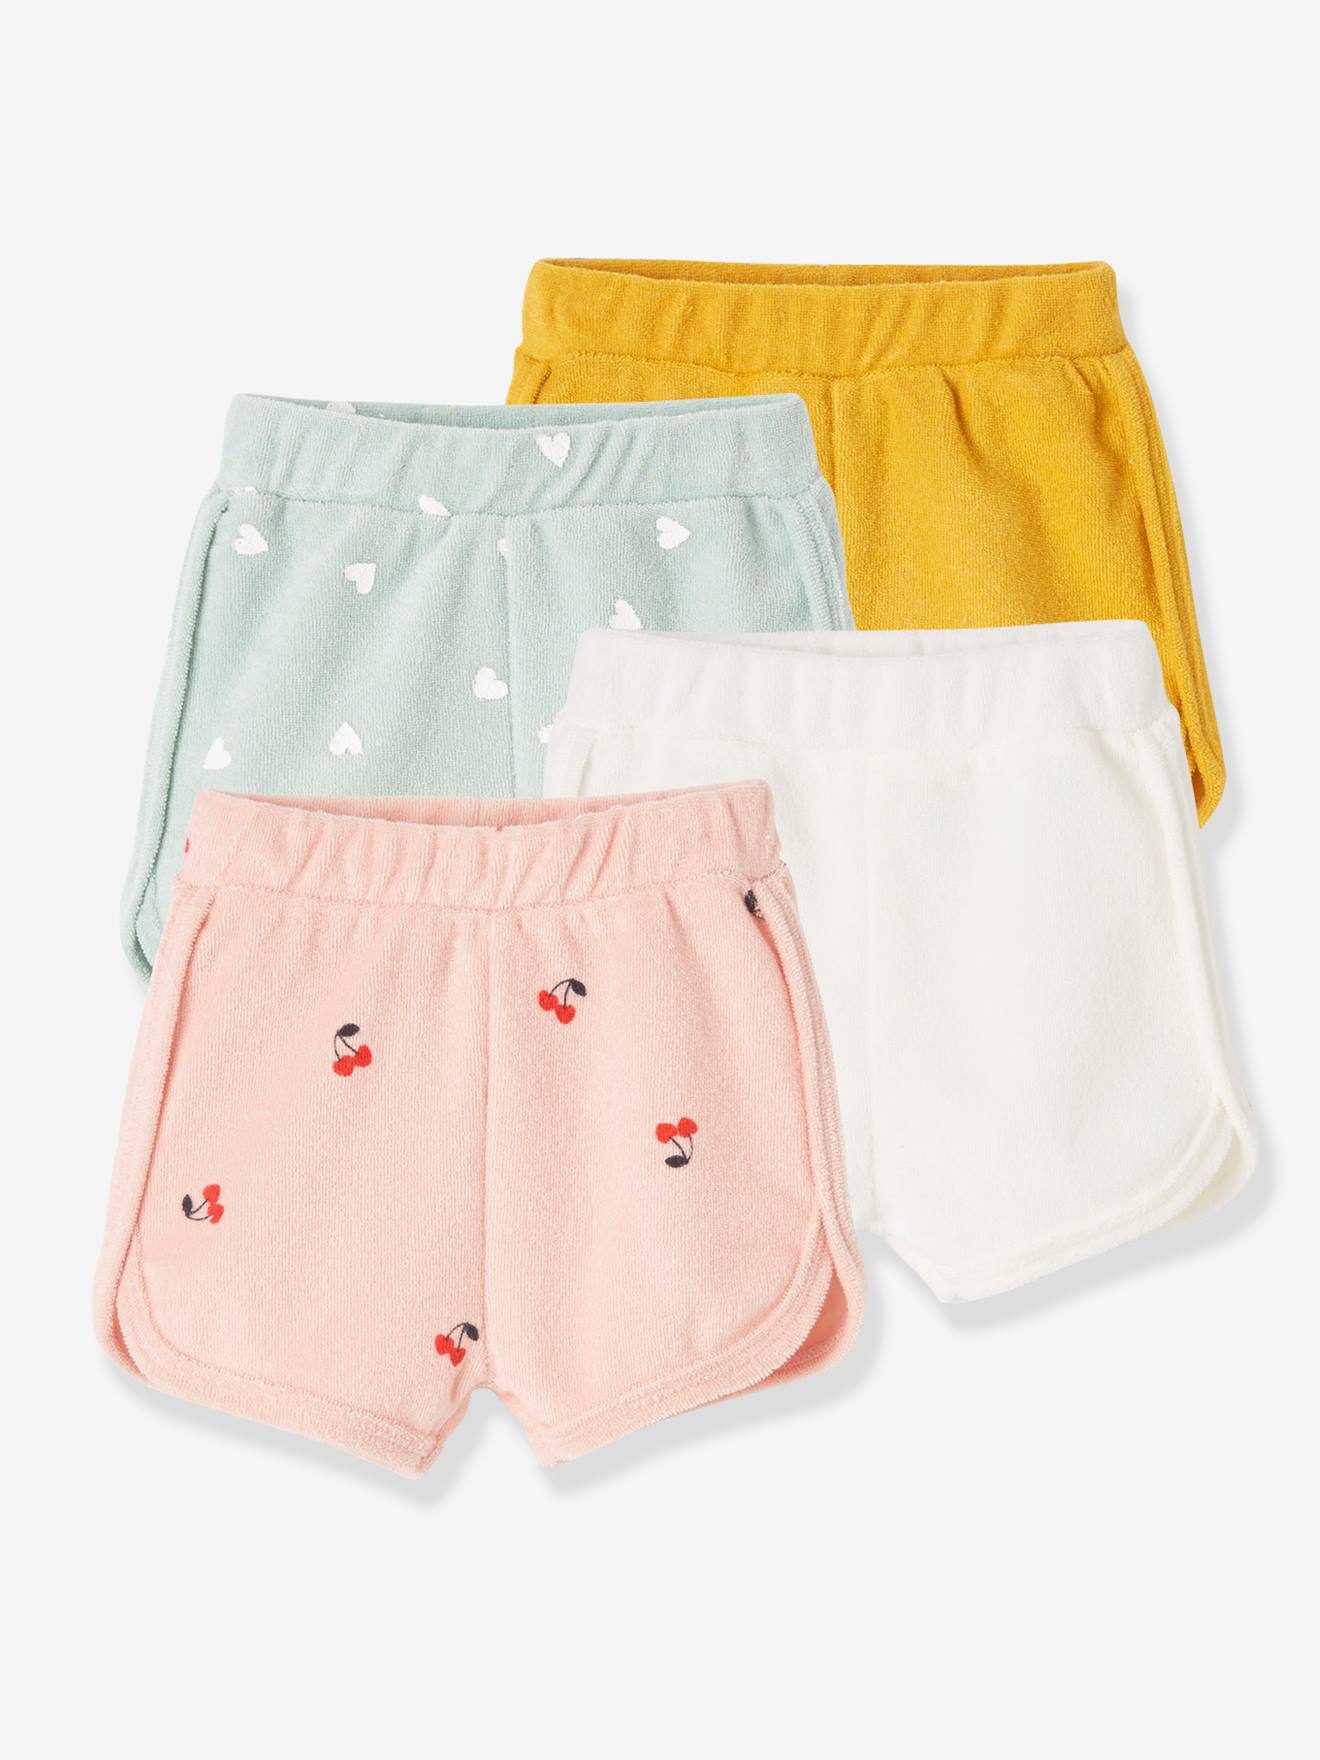 Presentator Elektricien Dwingend Set van 4 badstof shorts voor baby's - safraangele set, Baby